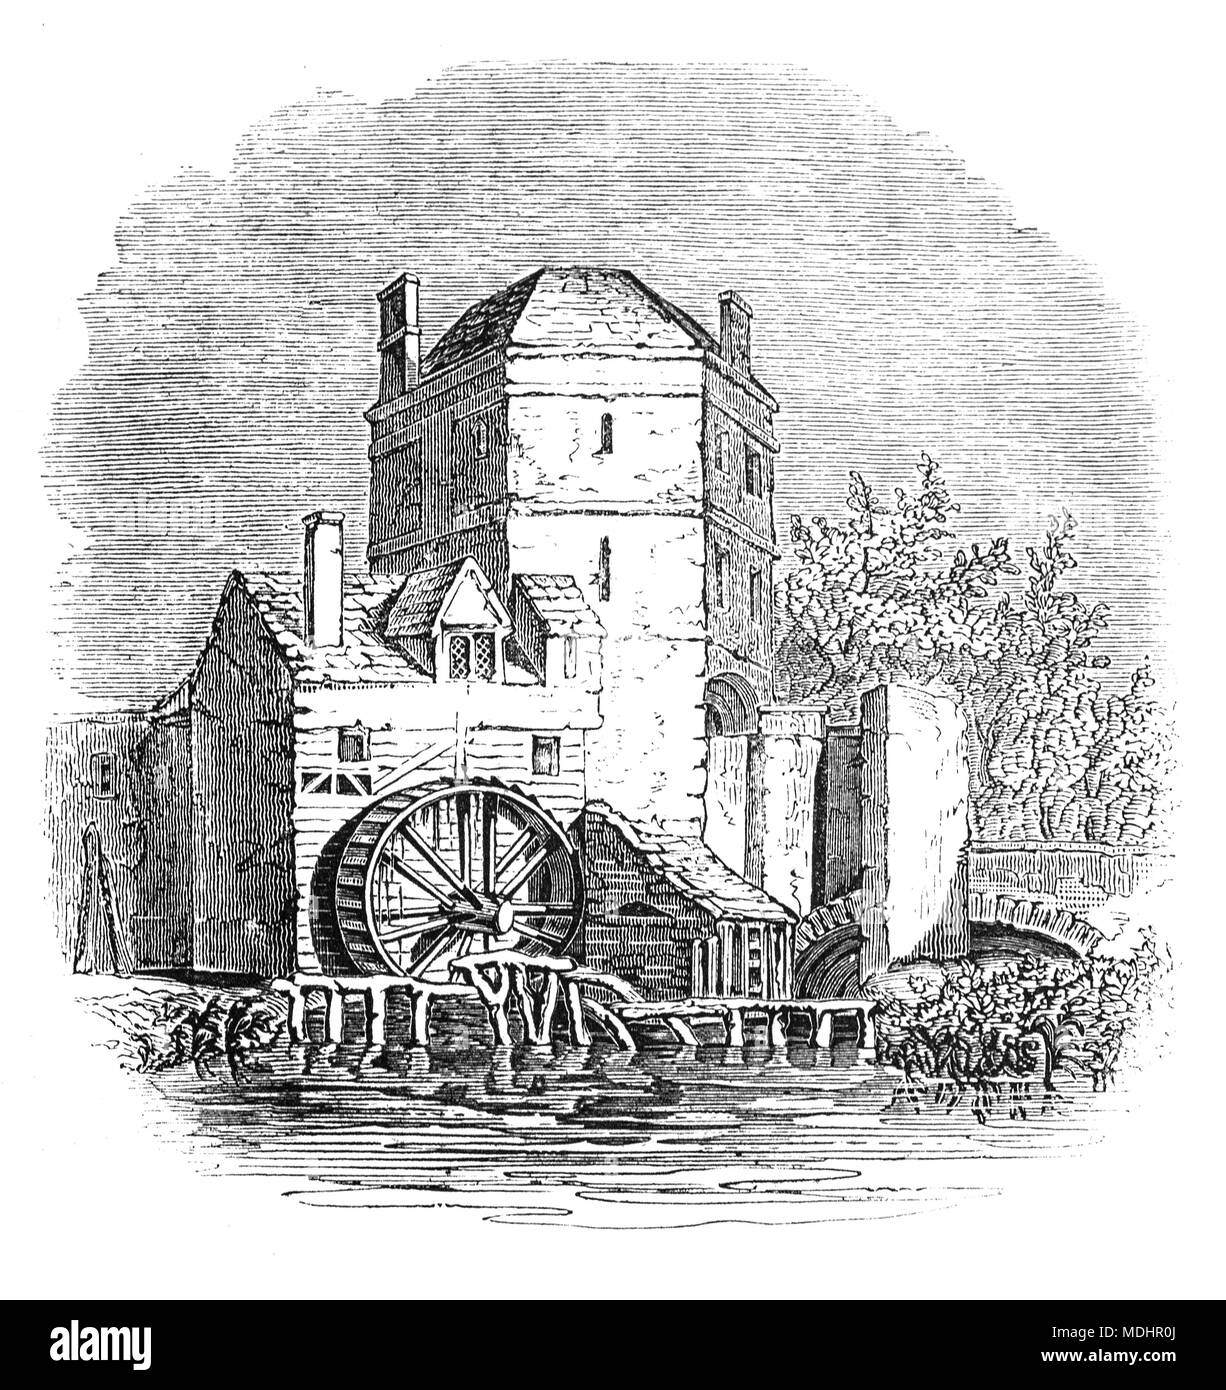 Der Turm an der Seite der Torheit Brücke über die Themse, Oxford, Oxfordshire, England, in dem das 13. Jahrhundert alchemist Roger Bacon sagte wird gelebt und gearbeitet. 'Friar's Speck Studie" stand über dem nördlichen Ende der Brücke bis 1779, wenn es entfernt wurde, die Straße zu verbreitern. Stockfoto